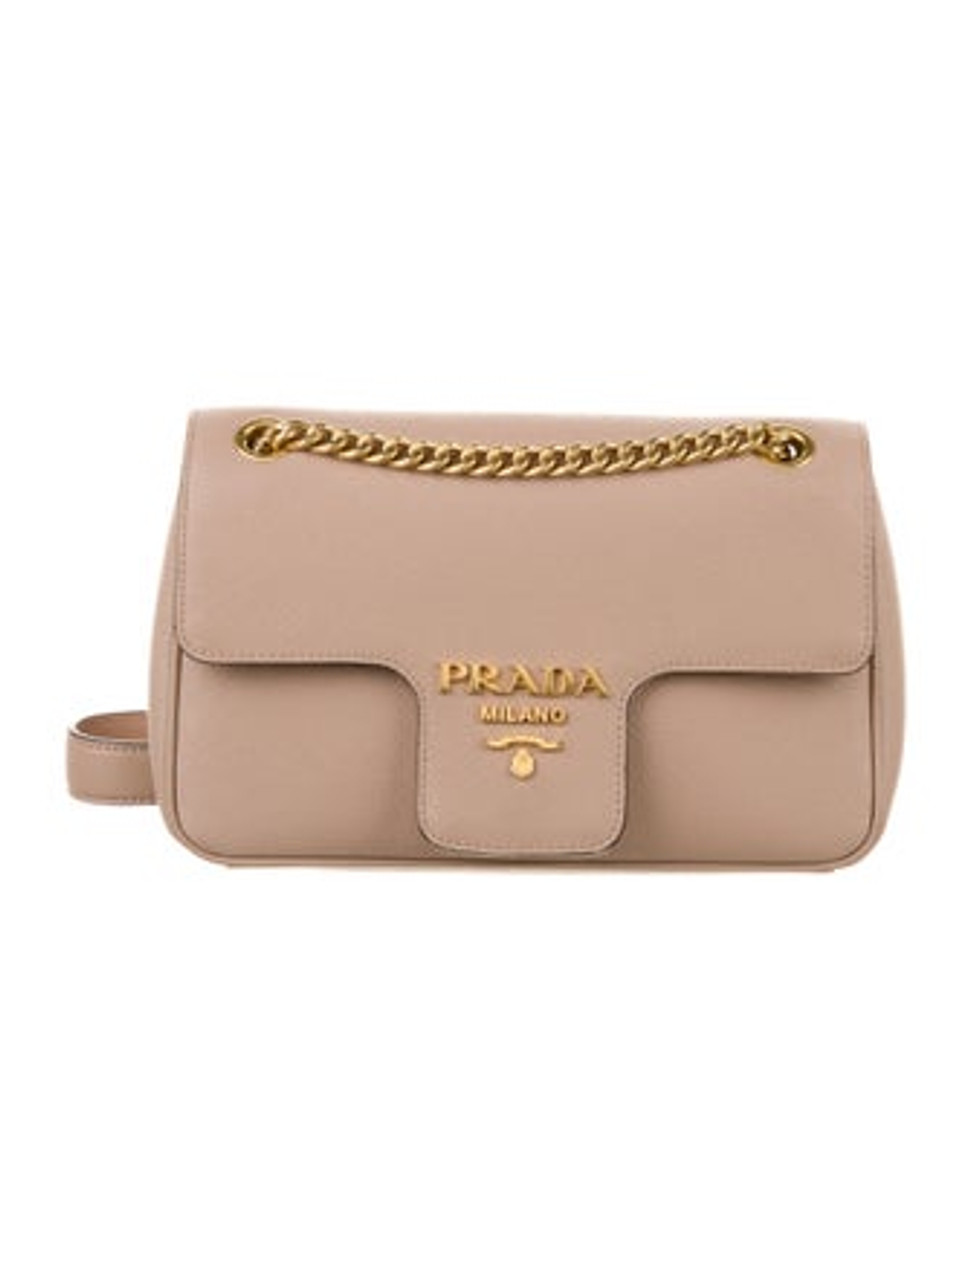 Prada Saffiano Pattina Flap Bag - Black Crossbody Bags, Handbags -  PRA869930